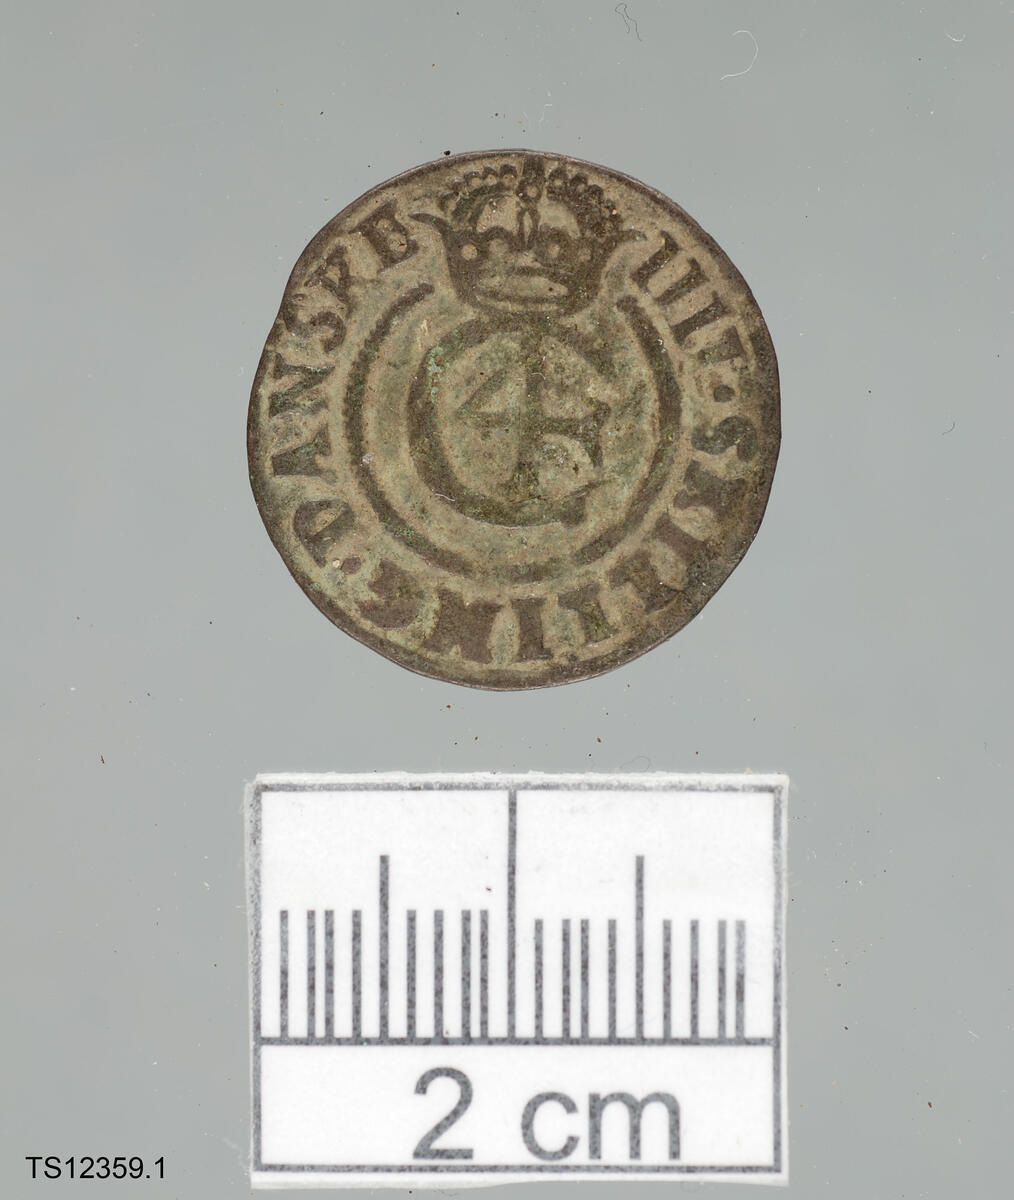 Mynt, 1 stk. av sølv. Type dansk 4-skilling fra 1644. 2,05 cm i diameter. 1,6 gram. 